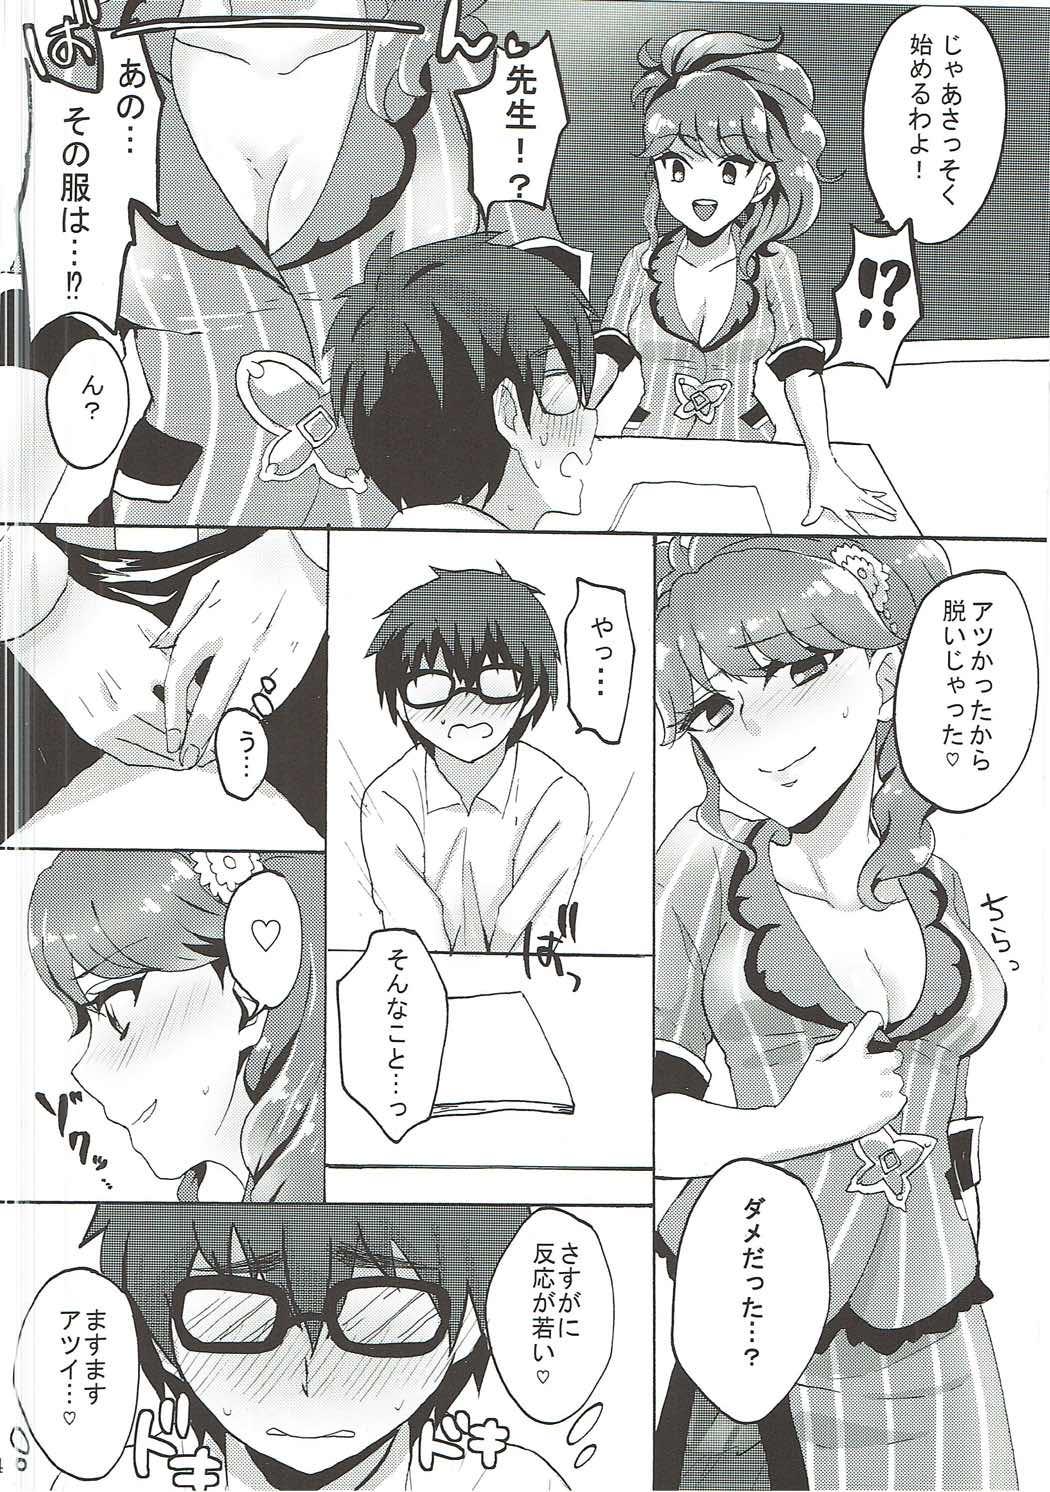 Time Oshiete! Aikatsu Sensei - Aikatsu Comedor - Page 5